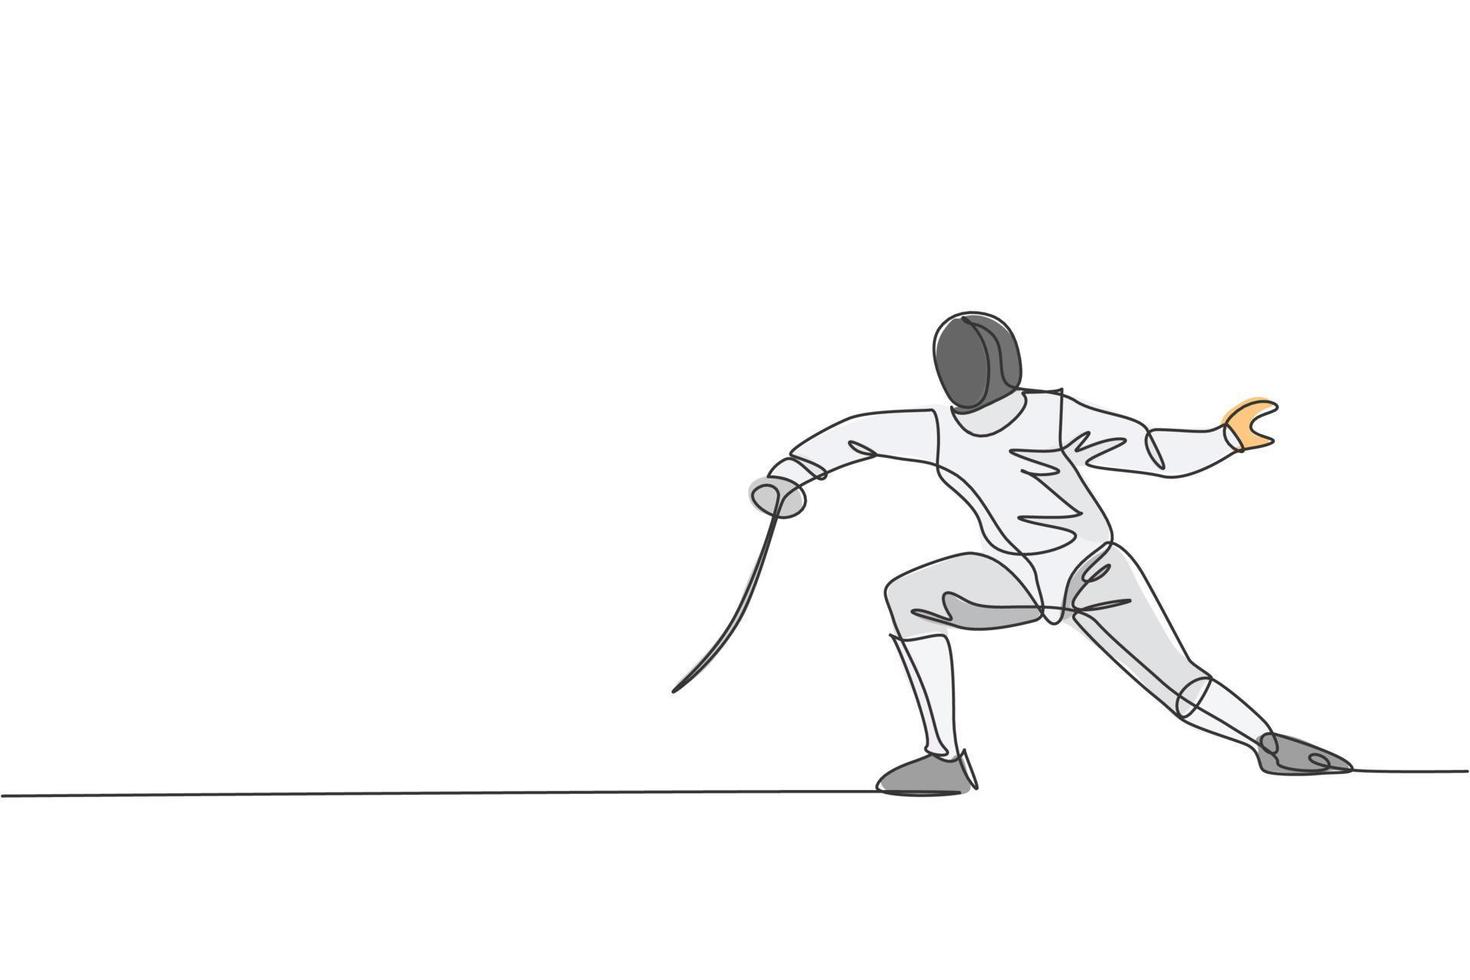 um único desenho de linha do jovem atleta esgrimista em traje de esgrima, exercitando o movimento na ilustração vetorial de arena esportiva. conceito de esporte combativo e de luta. design moderno de desenho de linha contínua vetor